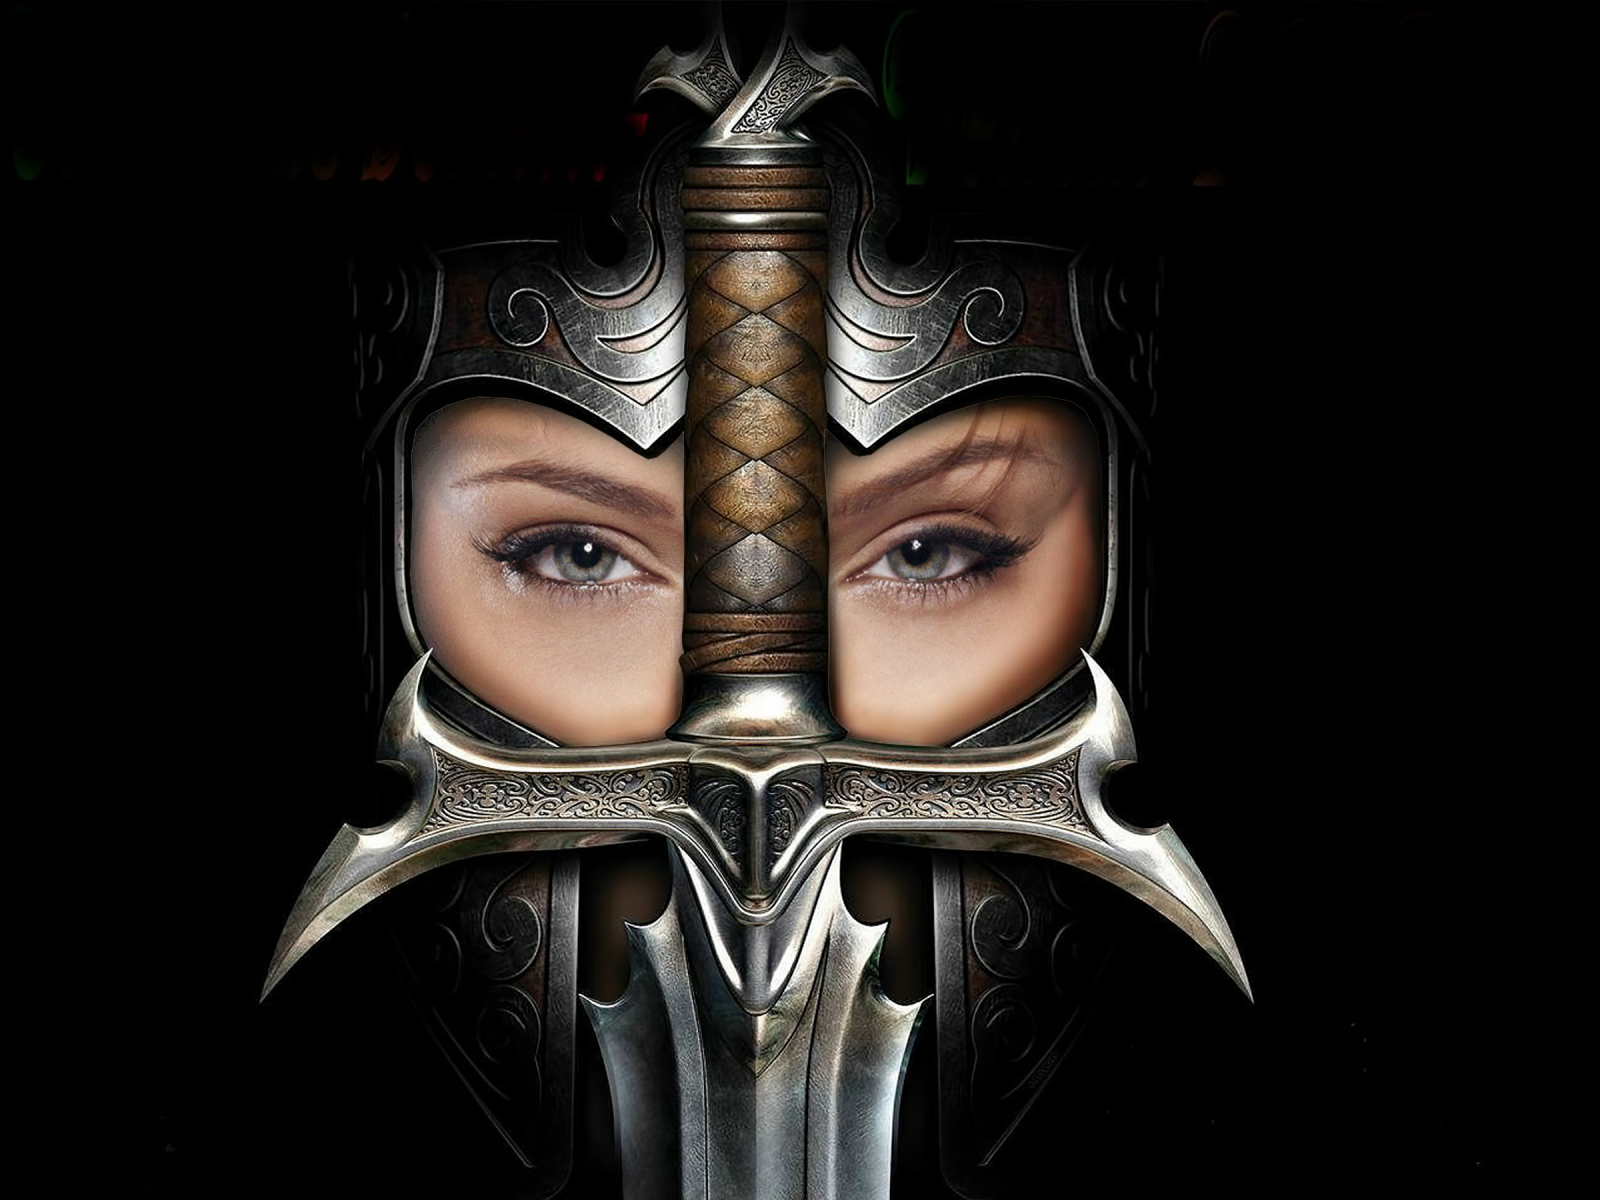 Культ королевства ереси, меч, шлем, девушка